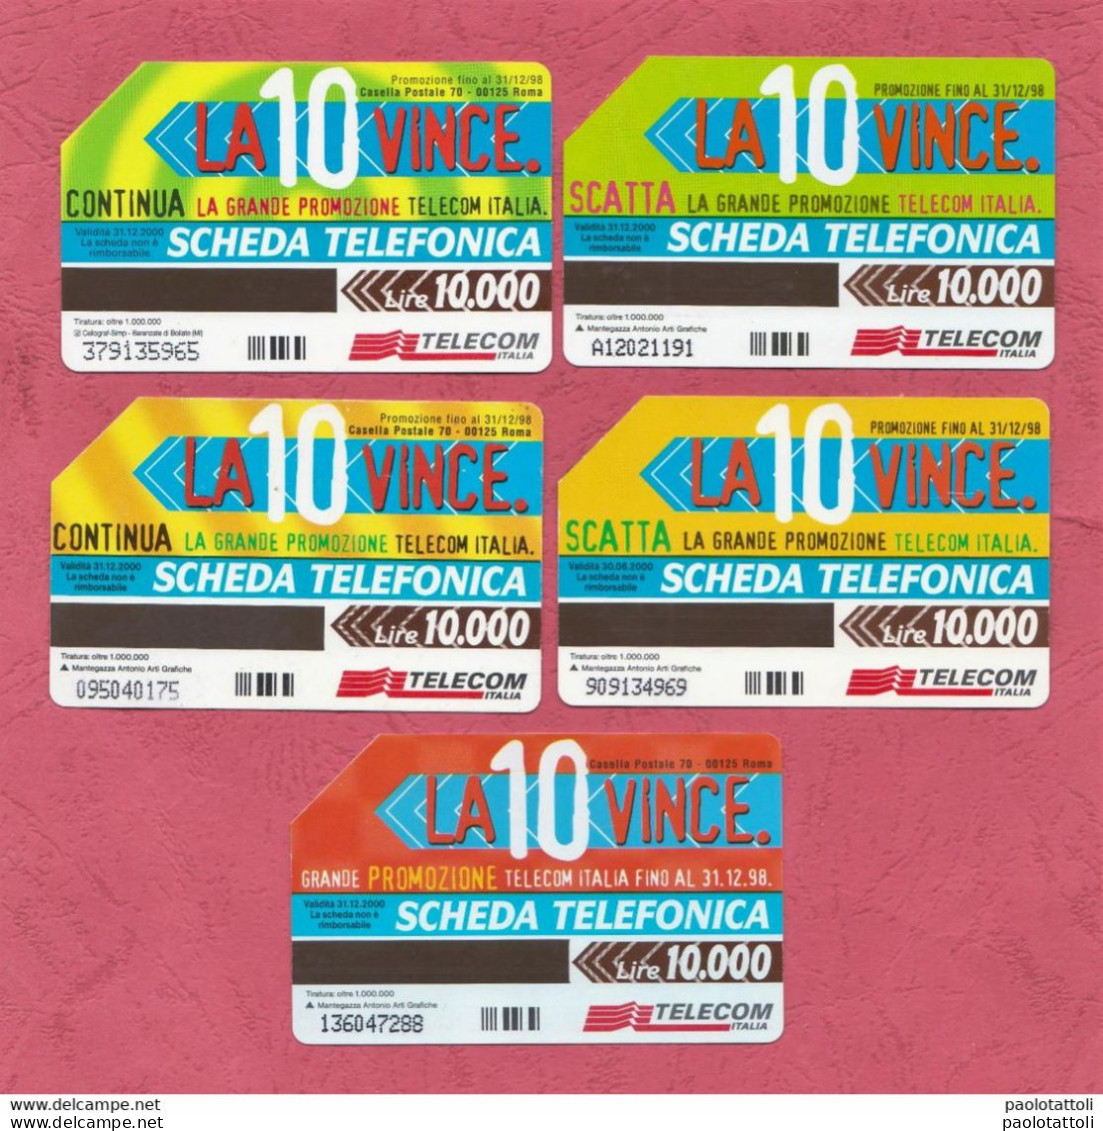 .Italy- La 10 Vince. Scatta E Vince La Grande Promozione Telecom Italia- Used Pre Paid Phone Cards- Telecom - Public Ordinary